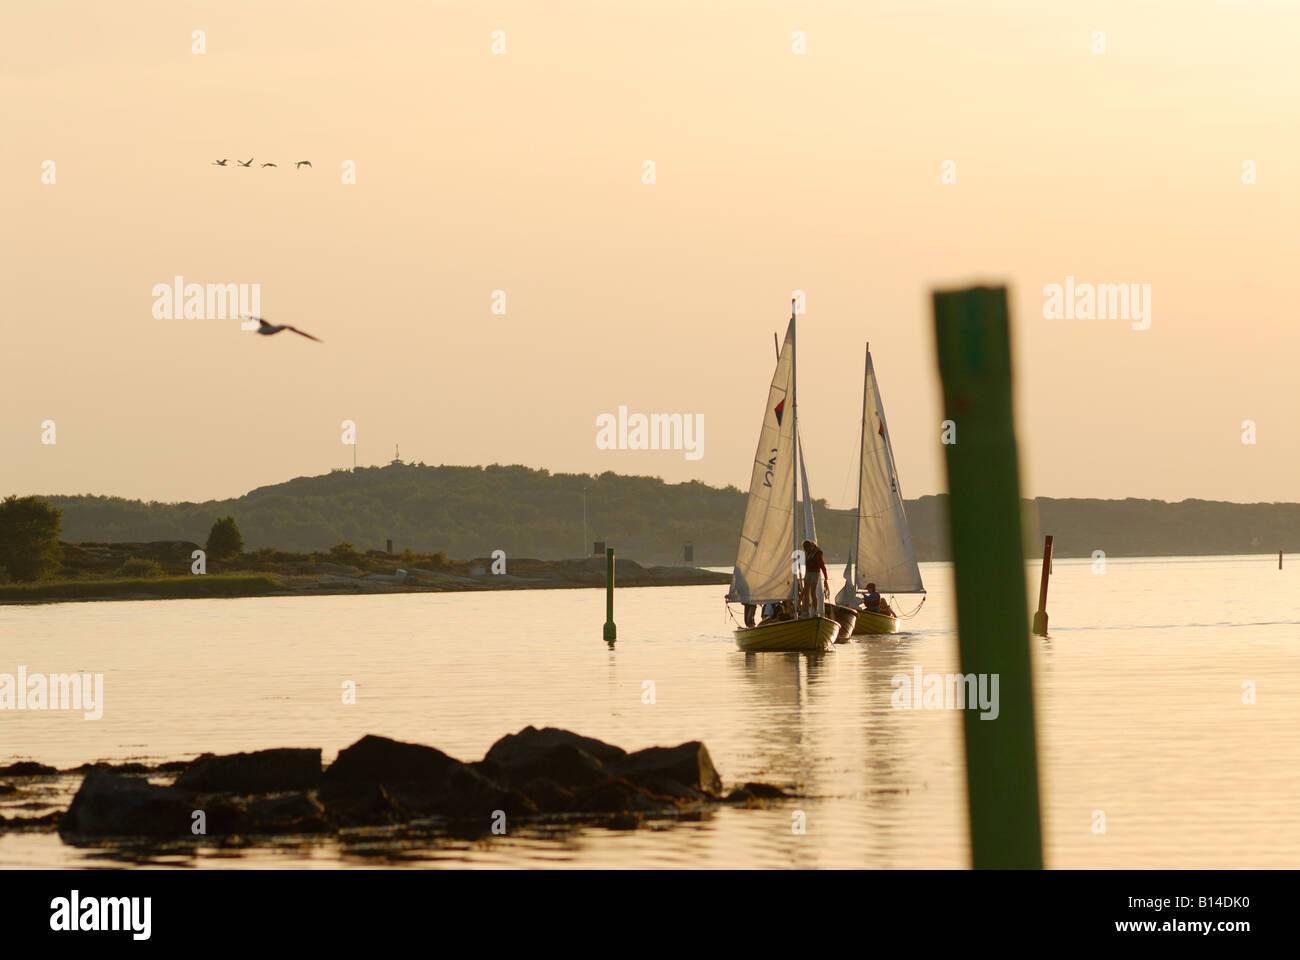 Sailing boats at dusk, Sweden, west coast Stock Photo